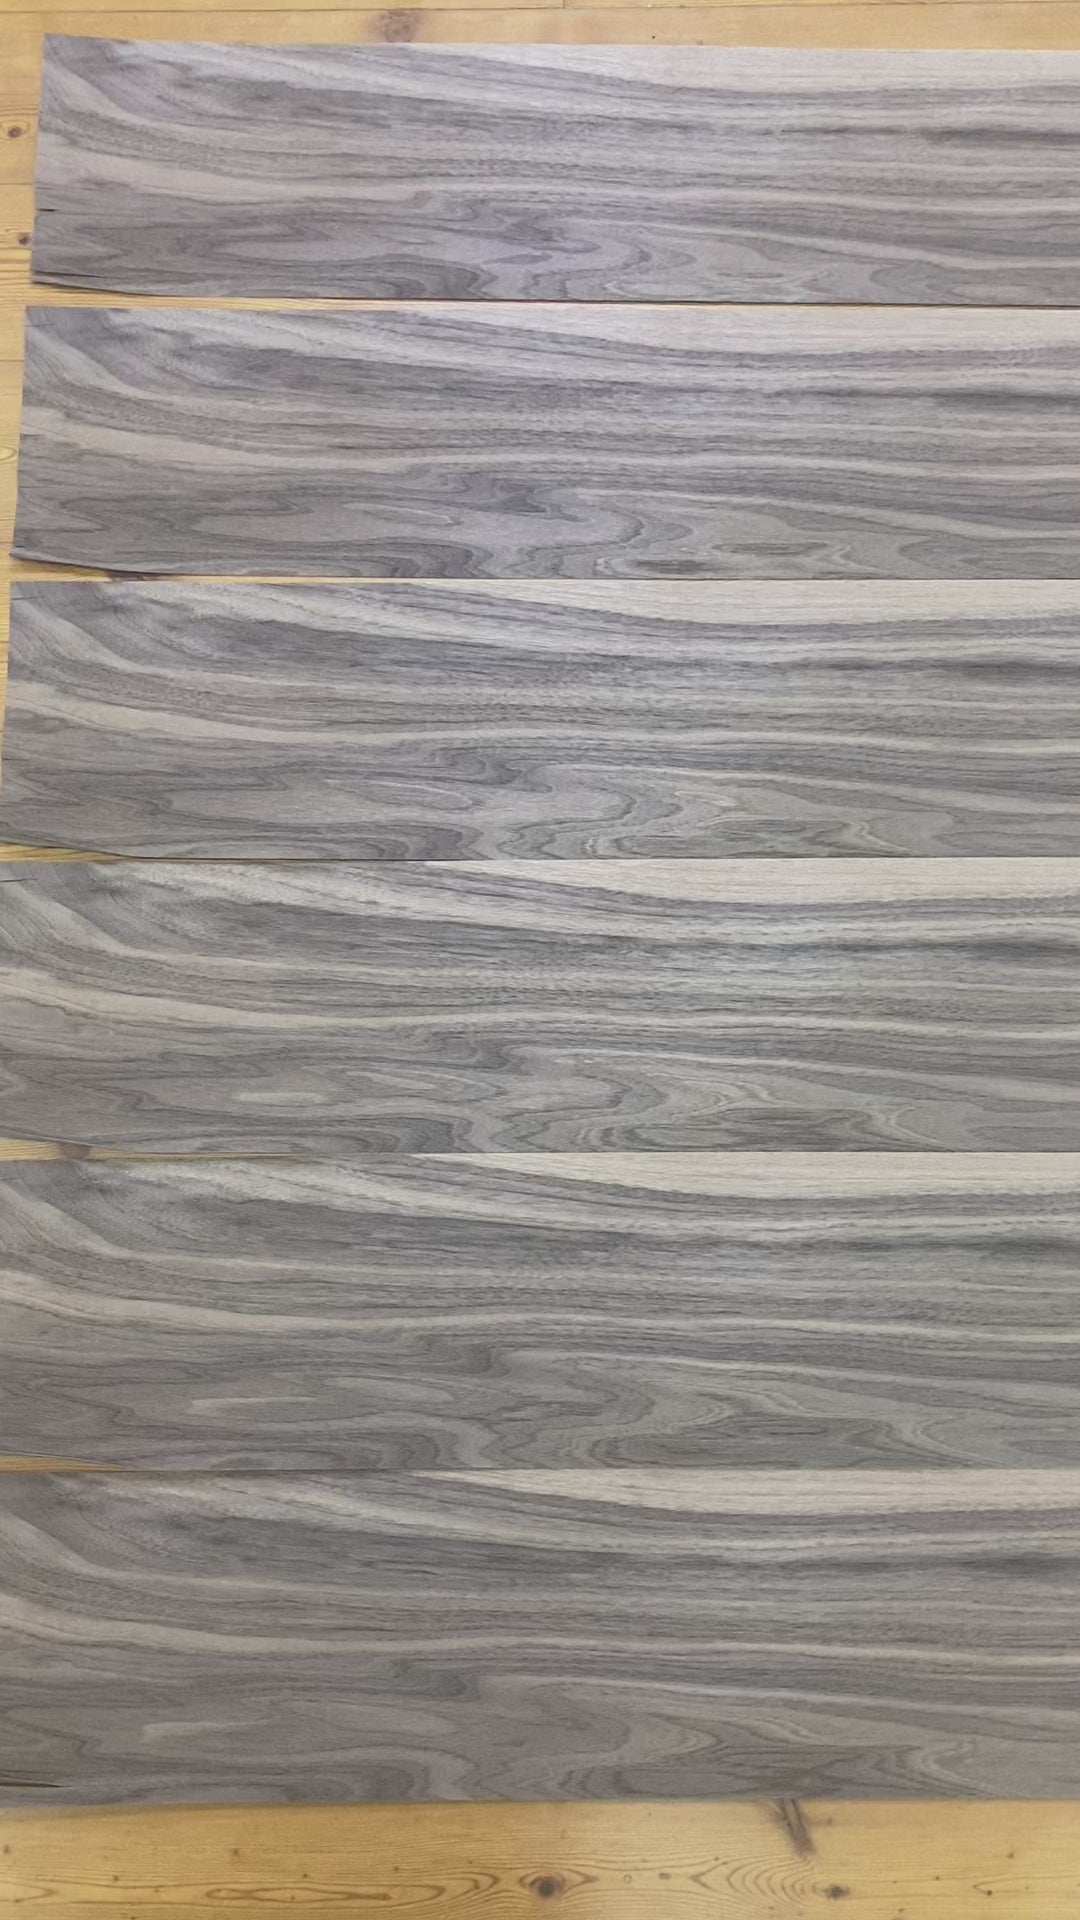 天然木 突板素材シリーズ ウォールナット板柾込み (厚0.5mm程度、巾